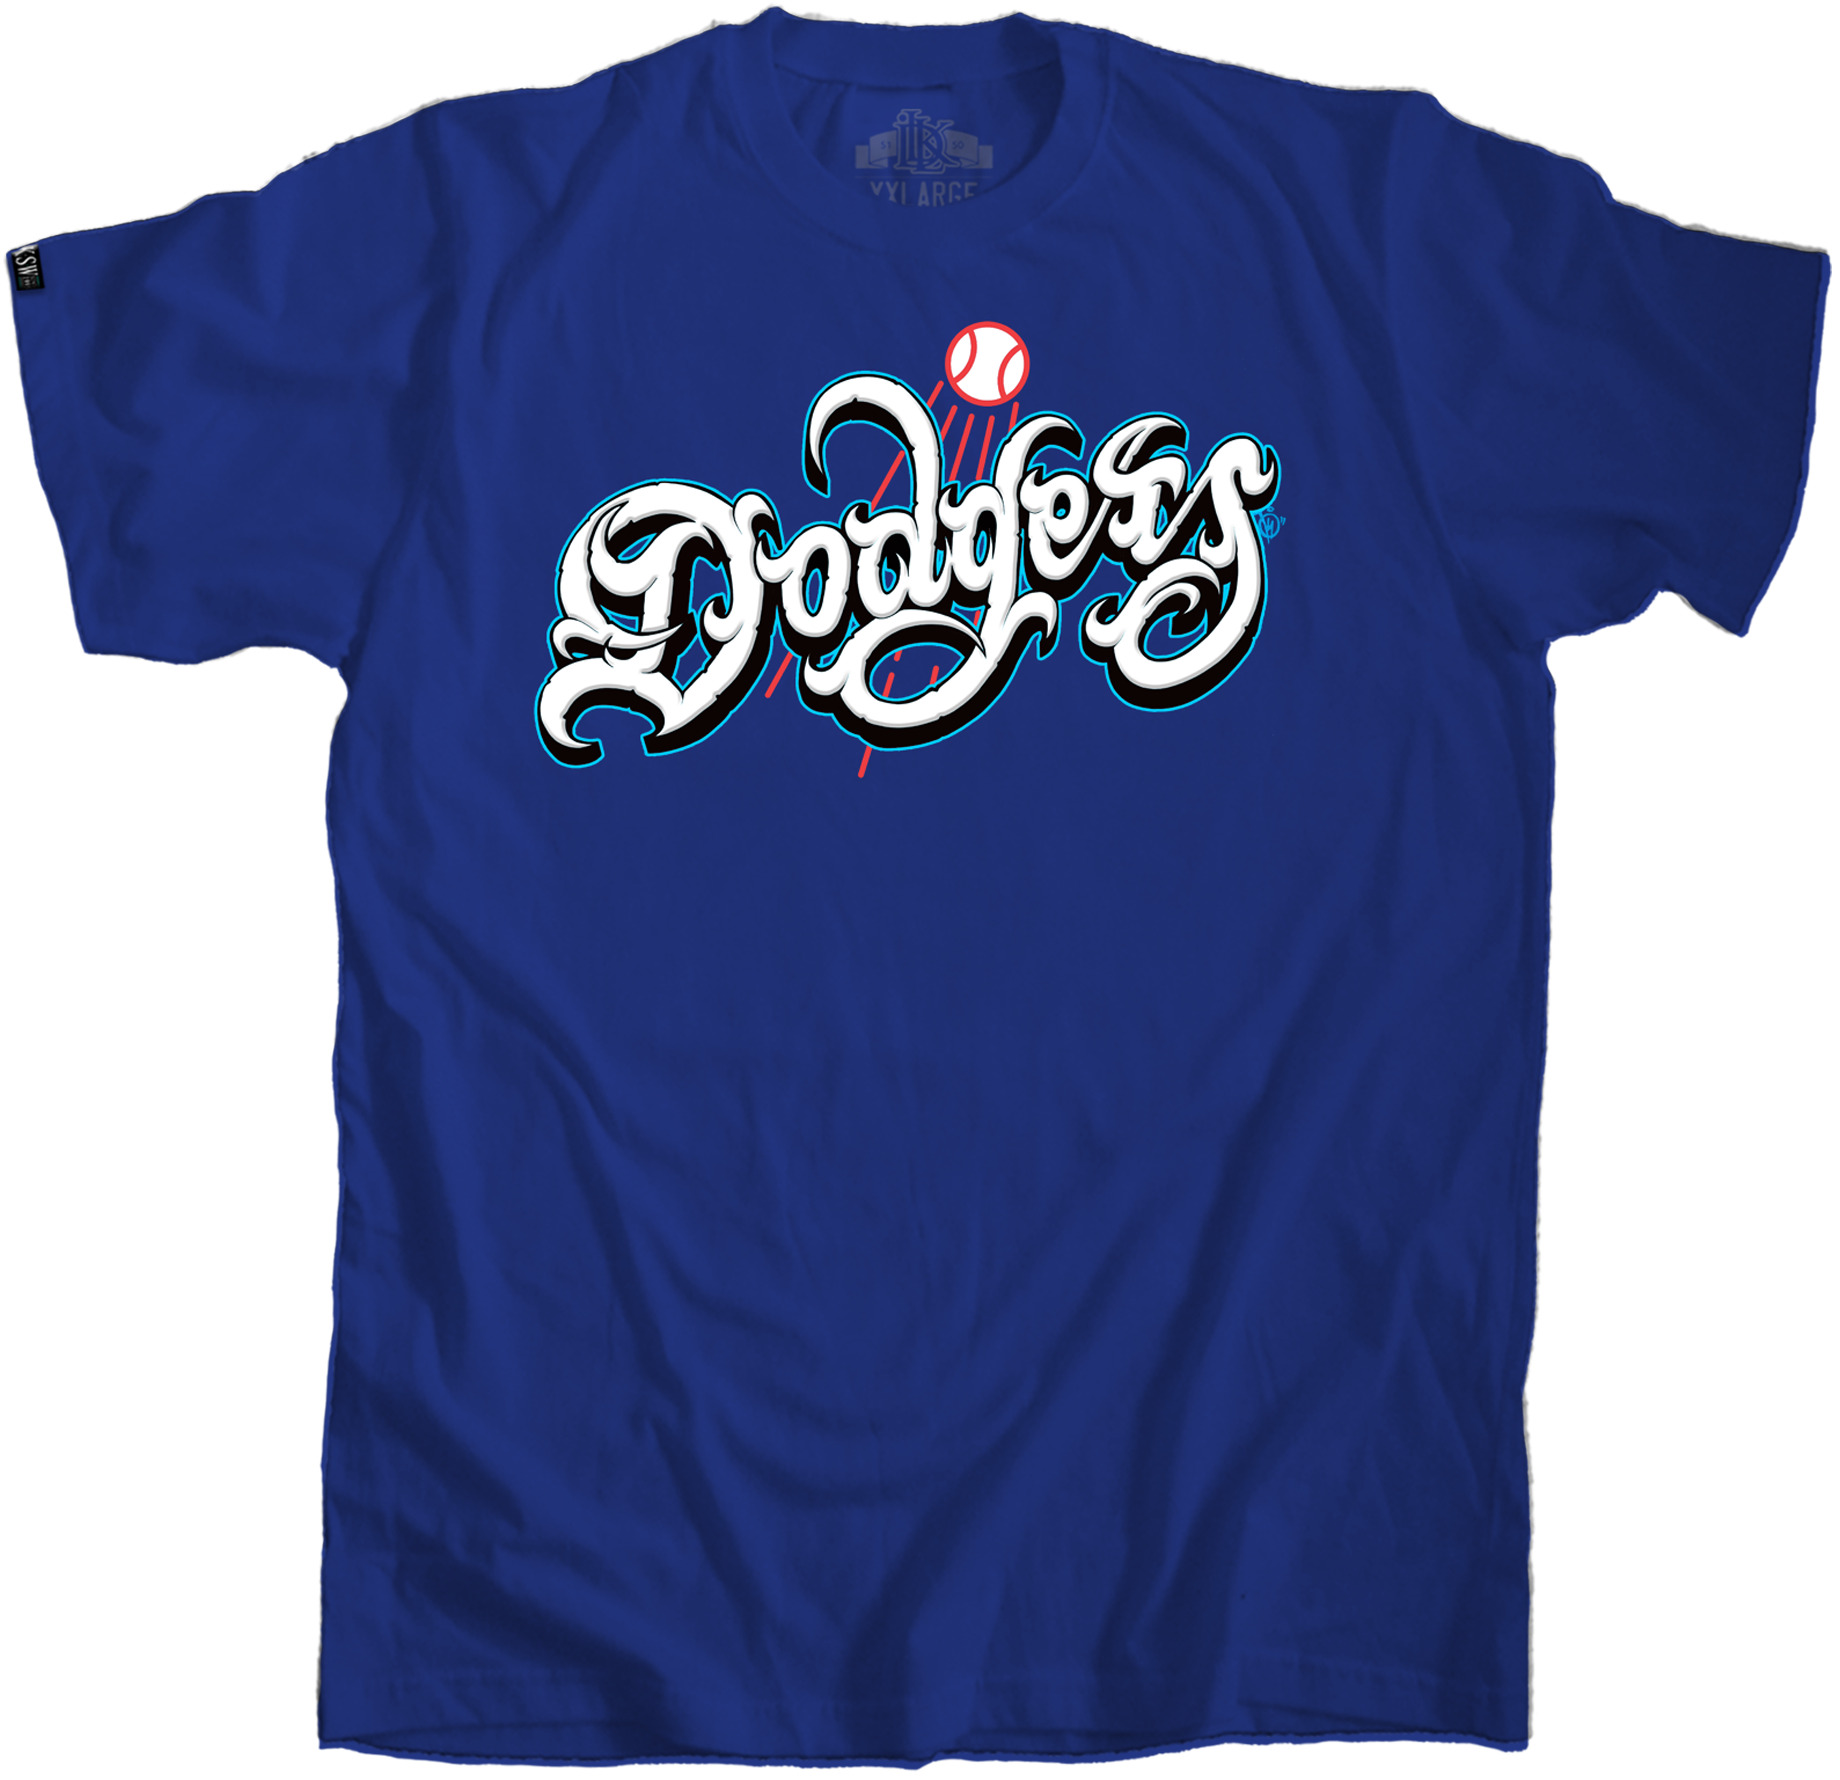 Dodgers Kaler Style -Blue